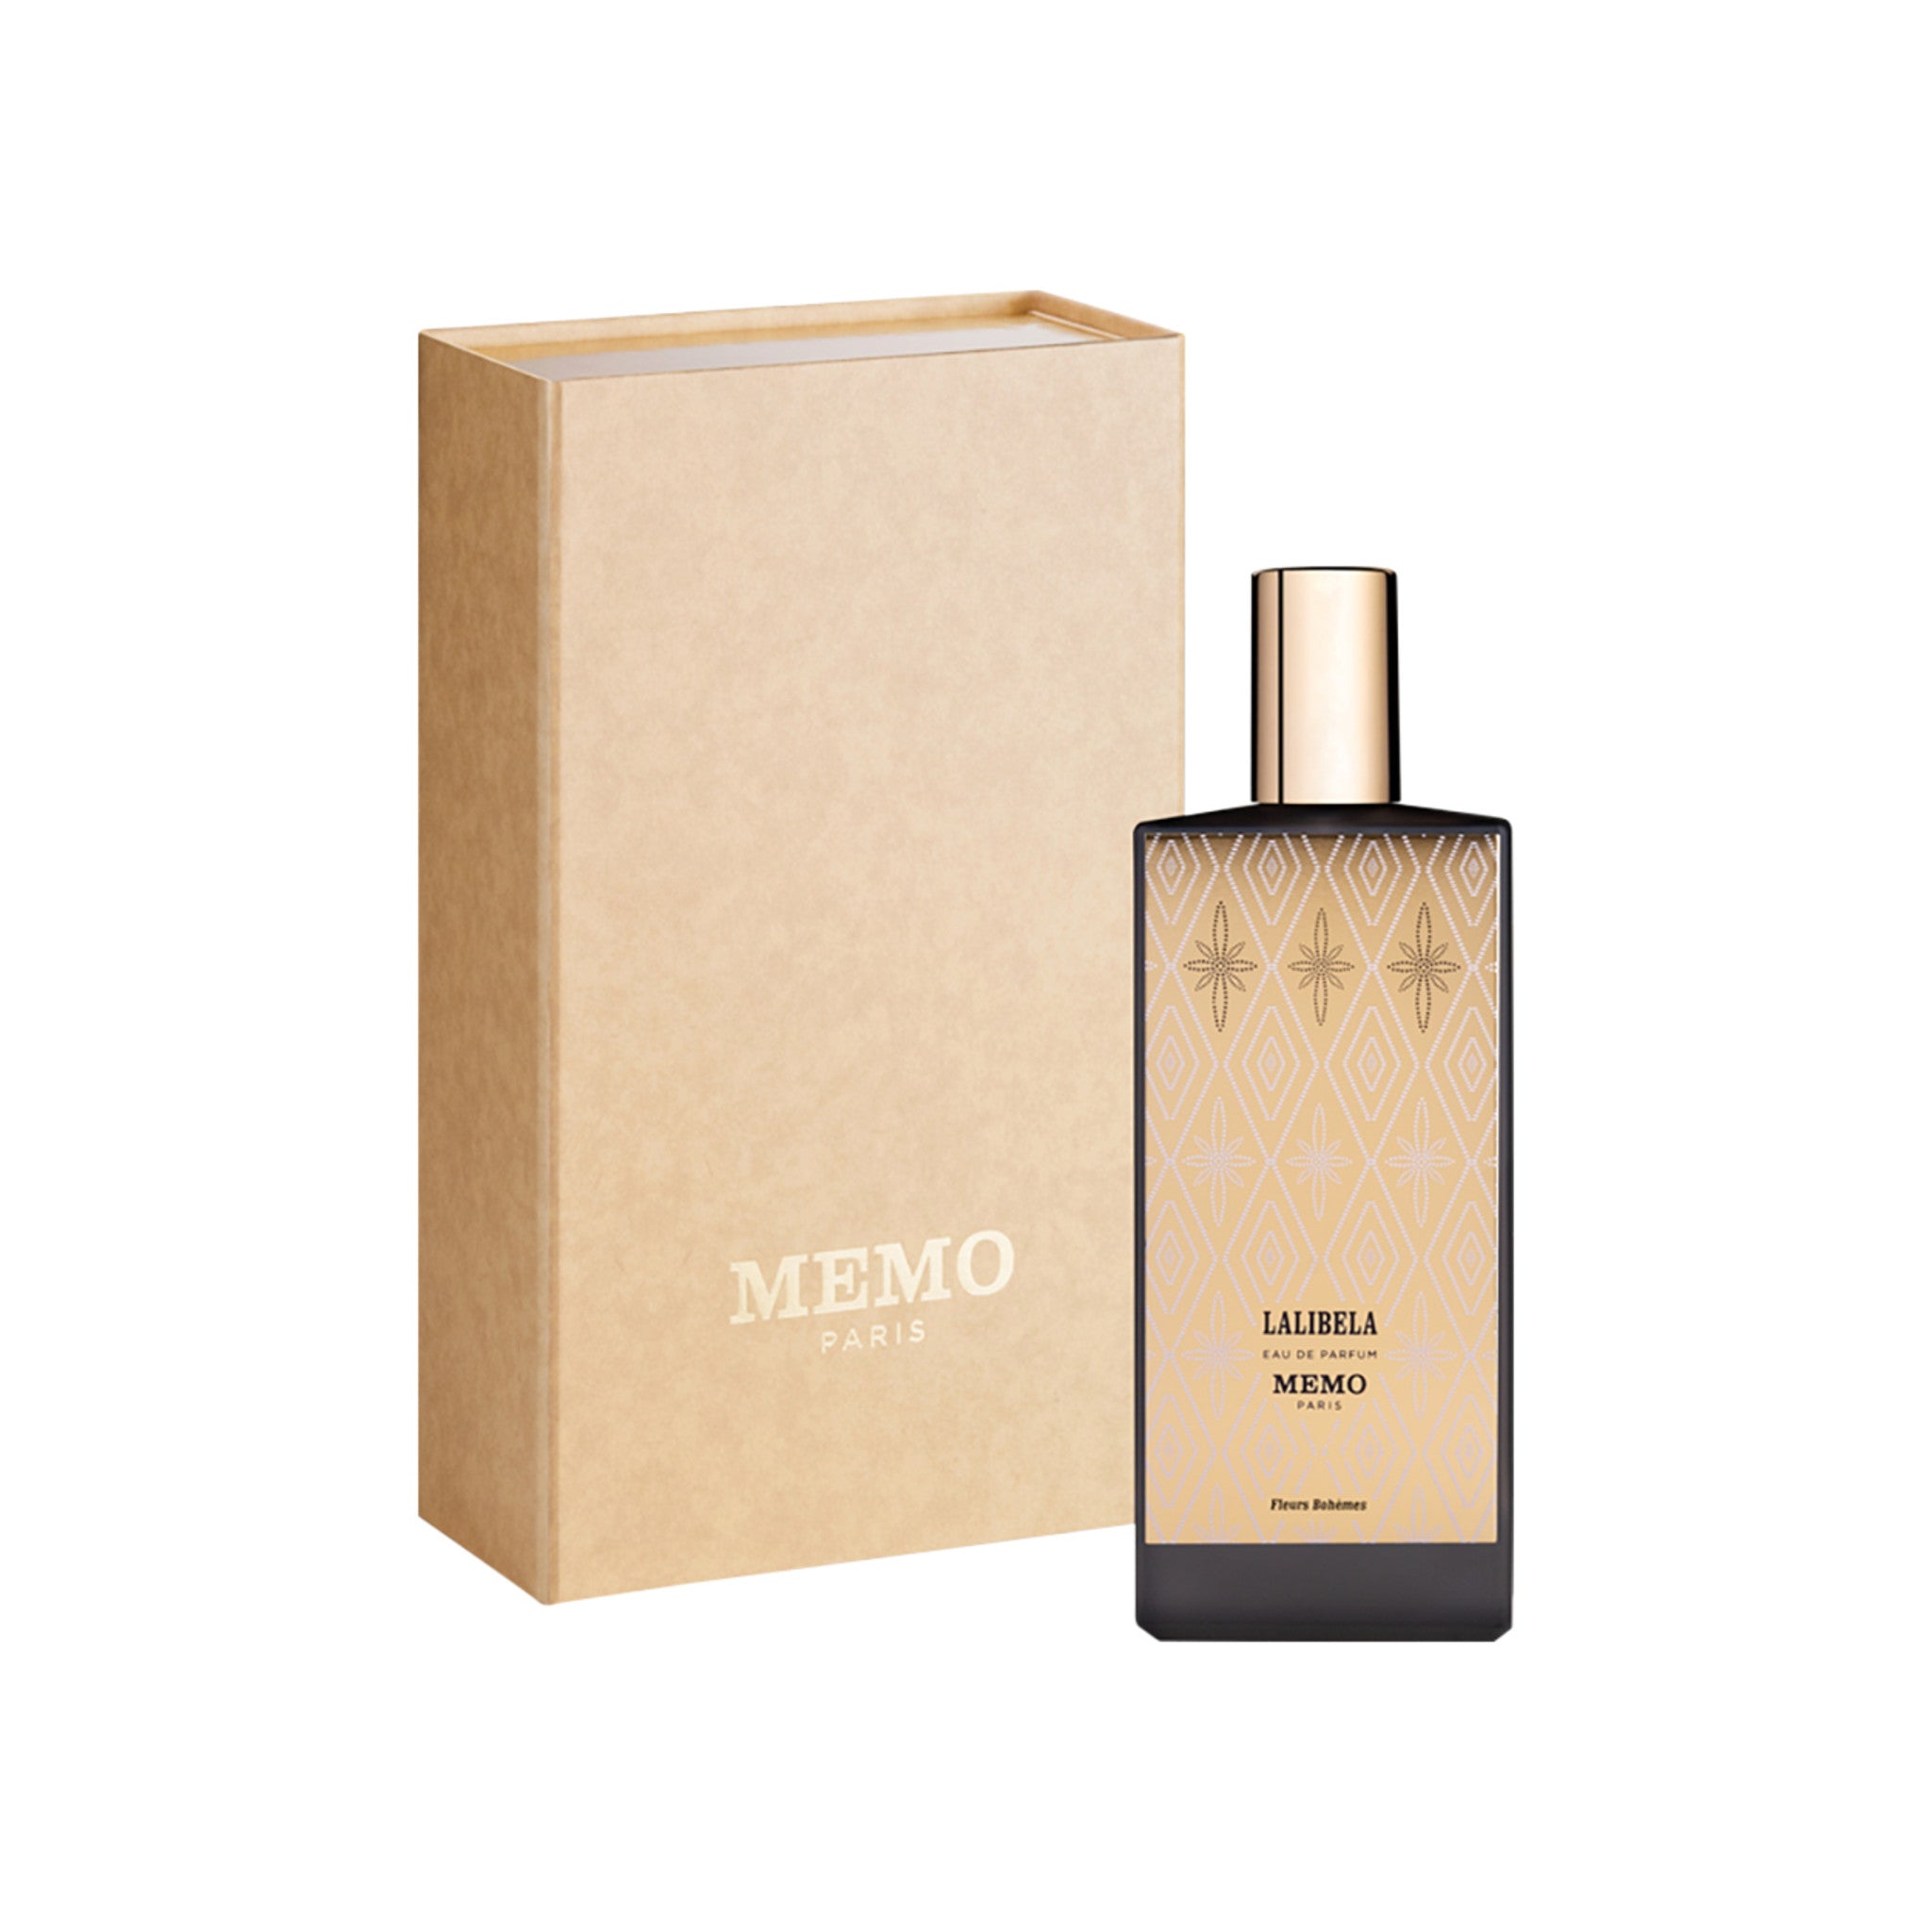 Memo Paris Lalibela Eau de Parfum Size variant: 2.54 oz | 75 ml main image.